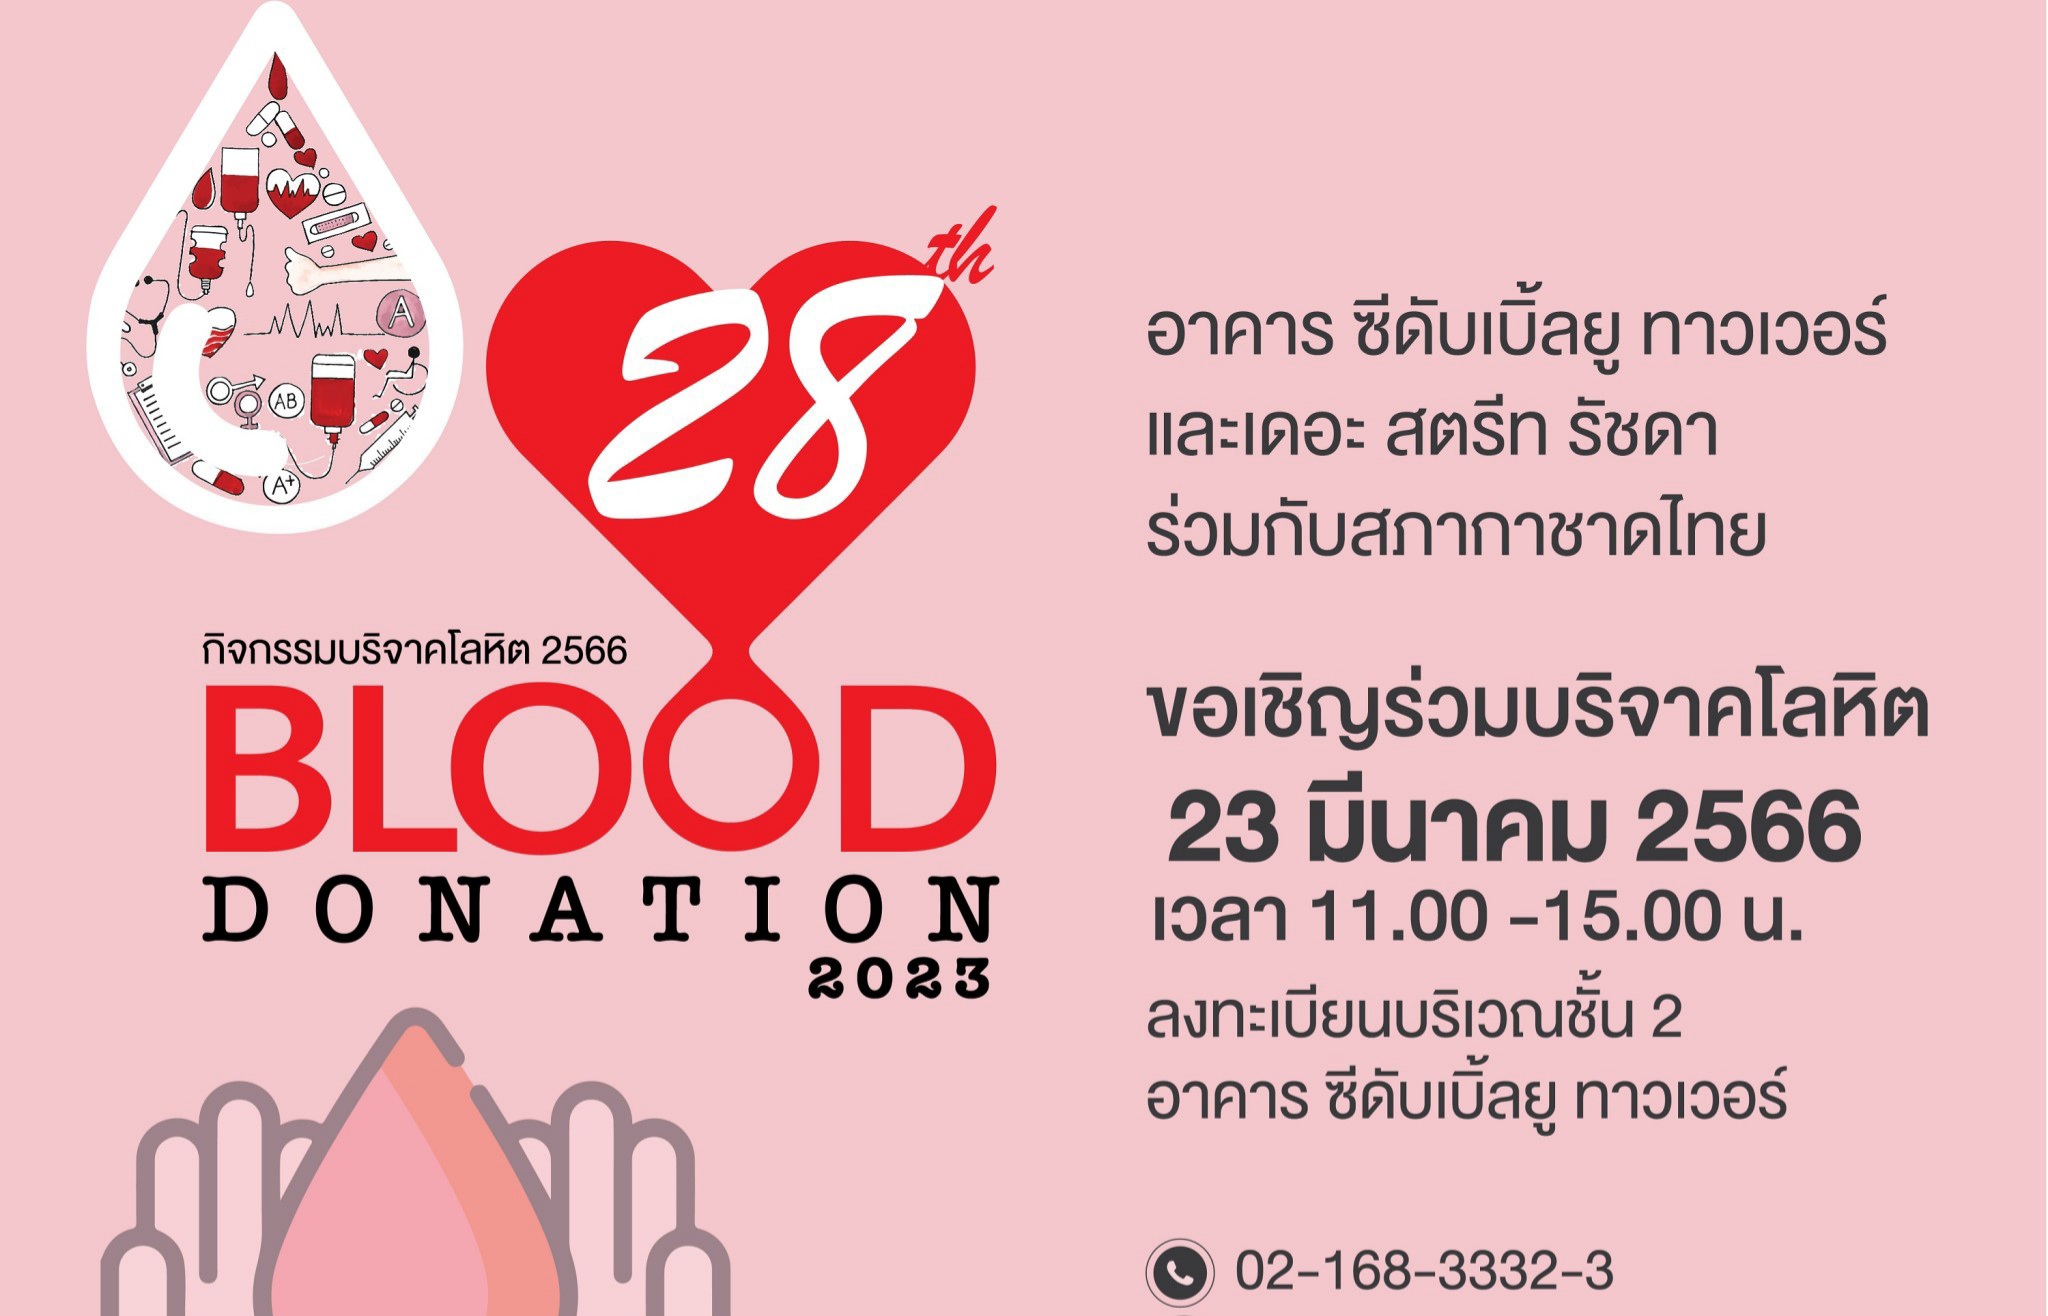 “อาคาร ซีดับเบิ้ลยู ทาวเวอร์” จับมือ “เดอะ สตรีท รัชดา” ชวนคนไทยร่วมบริจาคโลหิตในกิจกรรม “Blood Donation” ครั้งที่ 28